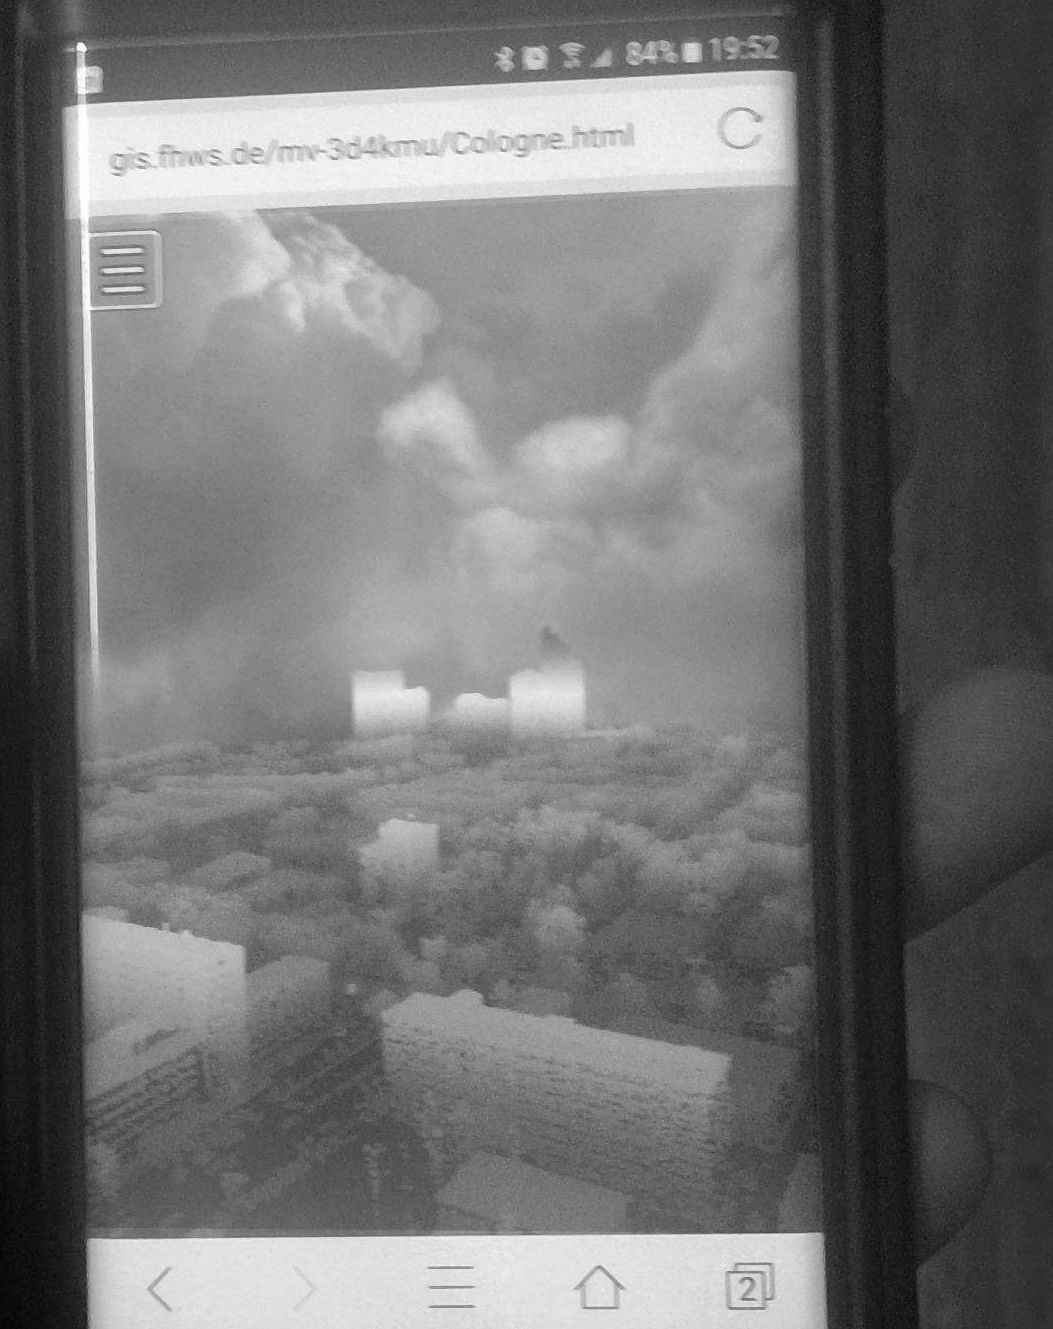 Abbildung 2: Im Bild wird die Anwendung Potree auf dem Handy ausgeführt. In der Anwendung werden Punktwolken der Stadt Köln nach Höhe eingefärbt, dargestellt. Das dient der einfacheren Erkennbarkeit der räumlichen Struktur der vielen Punkte.